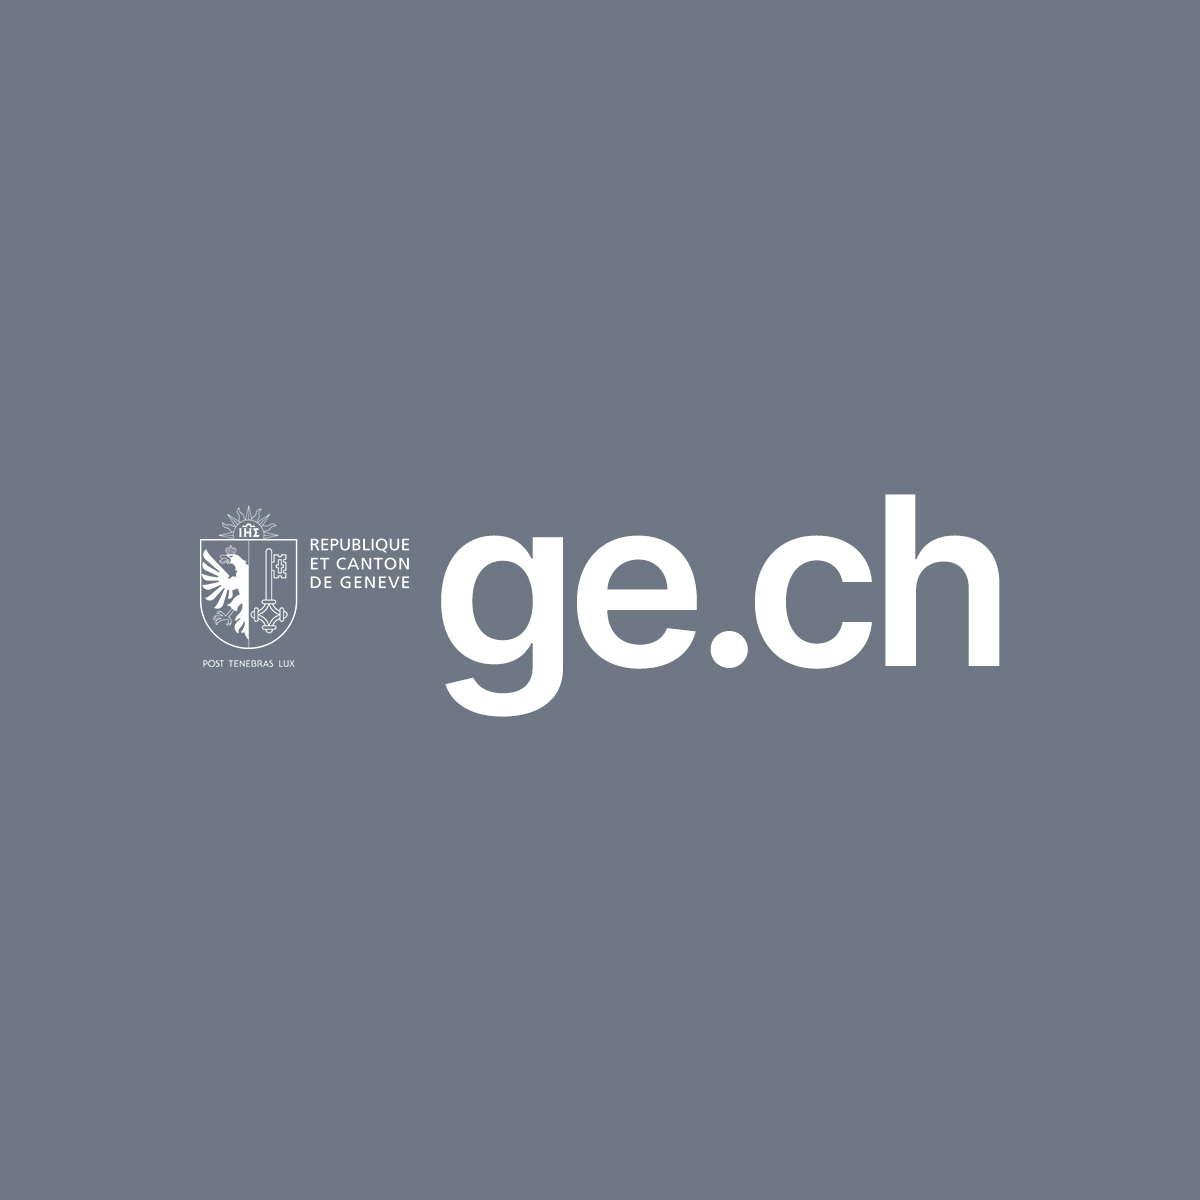 ge.ch – République et canton de Genève